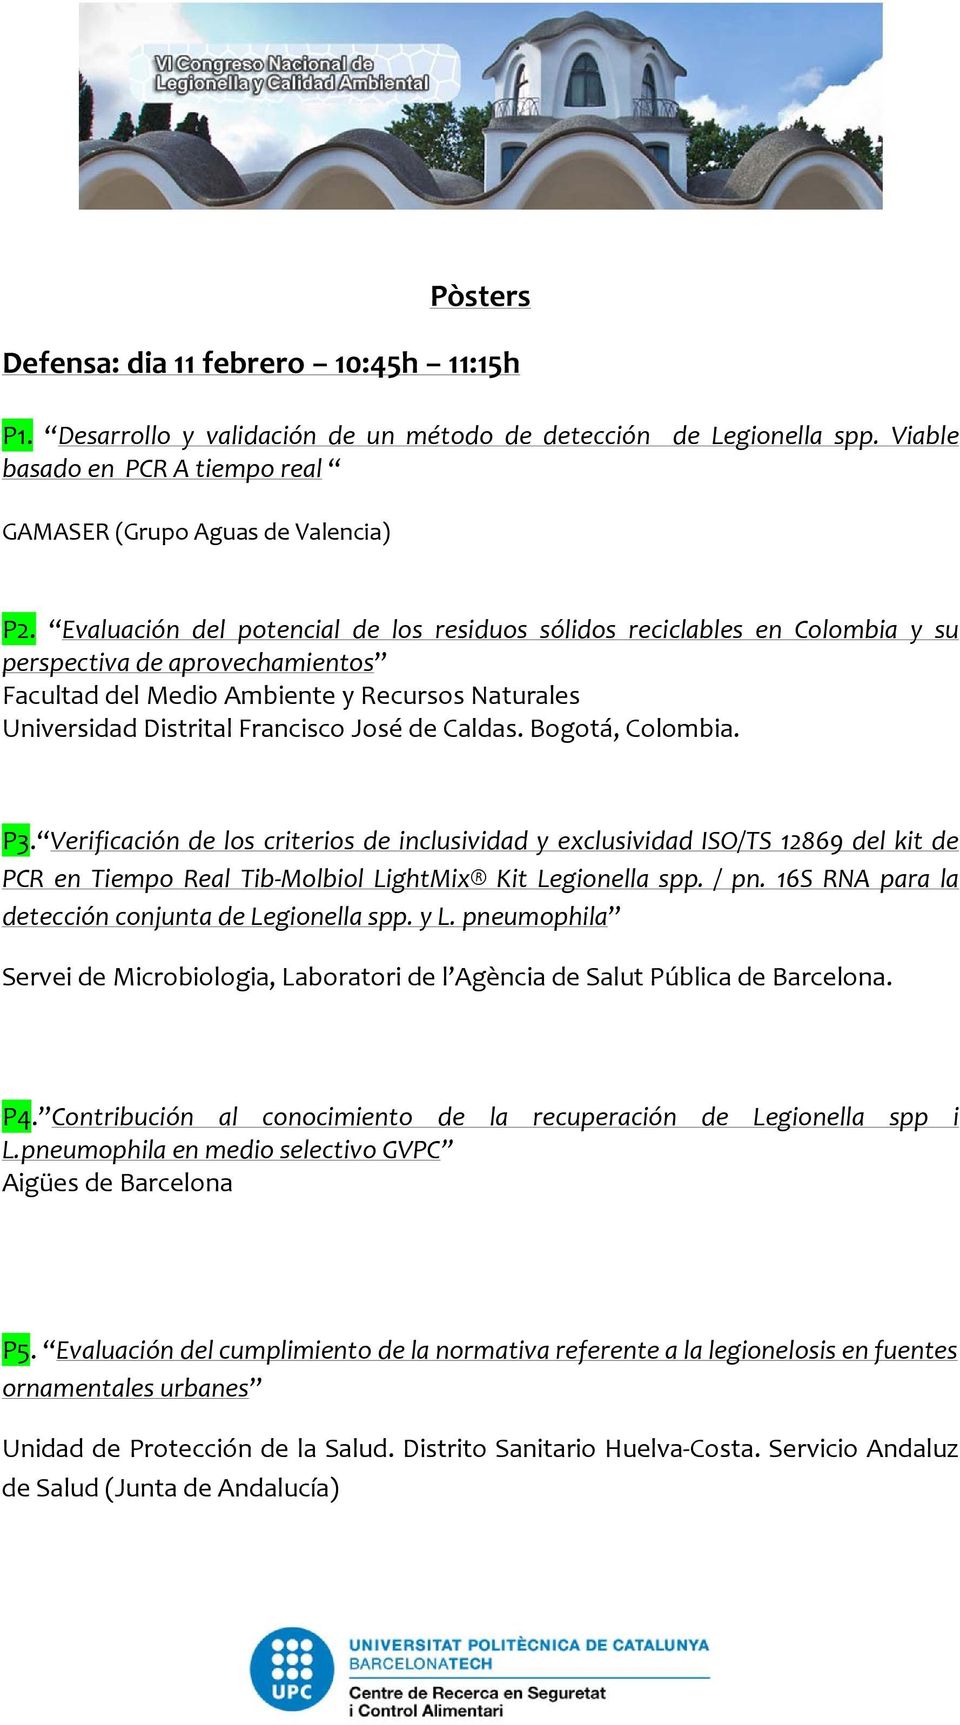 Caldas. Bogotá, Colombia. P3. Verificación de los criterios de inclusividad y exclusividad ISO/TS 12869 del kit de PCR en Tiempo Real Tib Molbiol LightMix Kit Legionella spp. / pn.